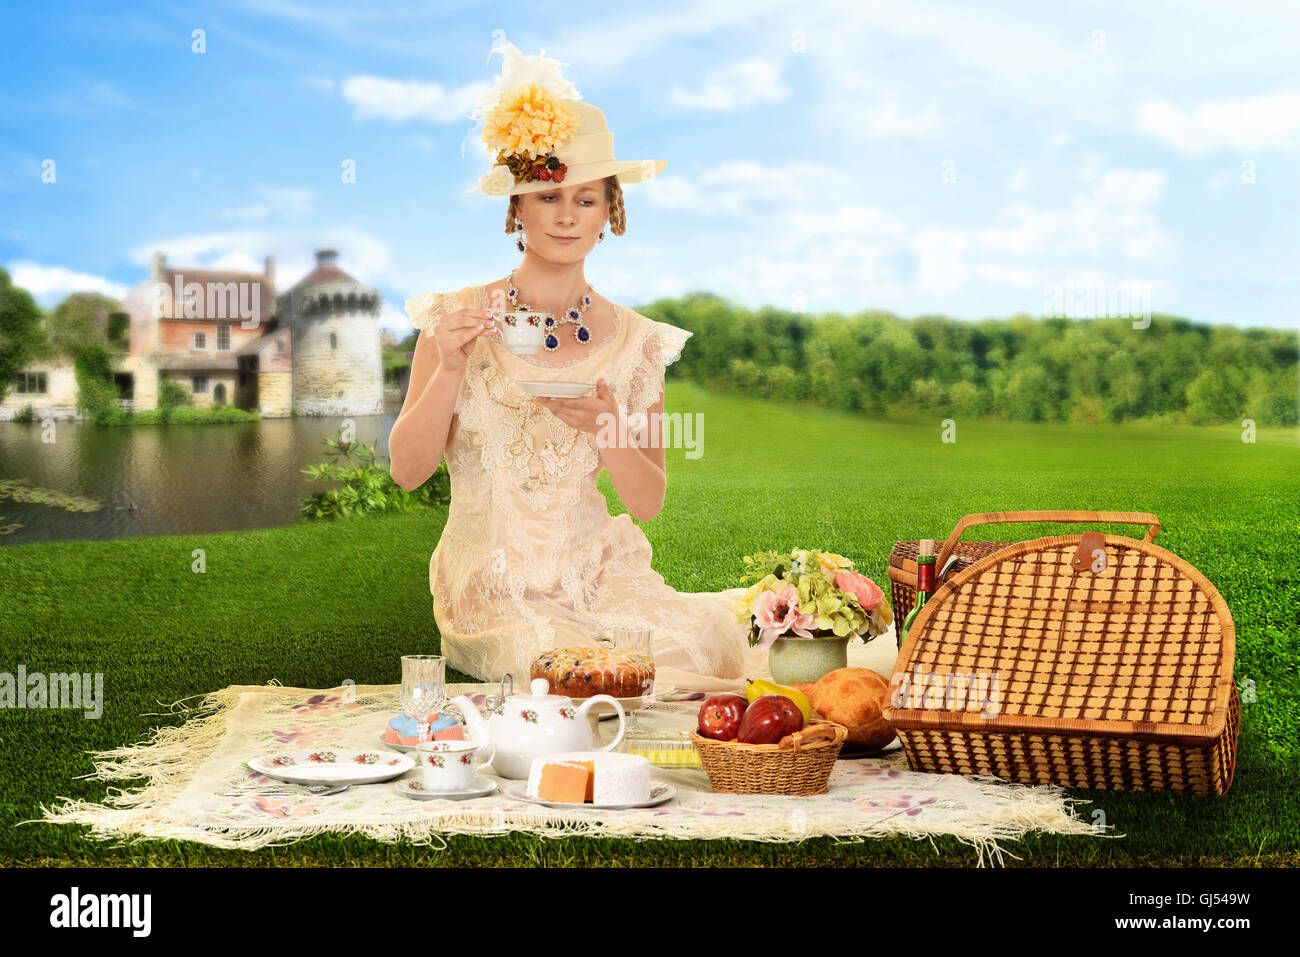 vintage woman picnic by lake Stock Photo